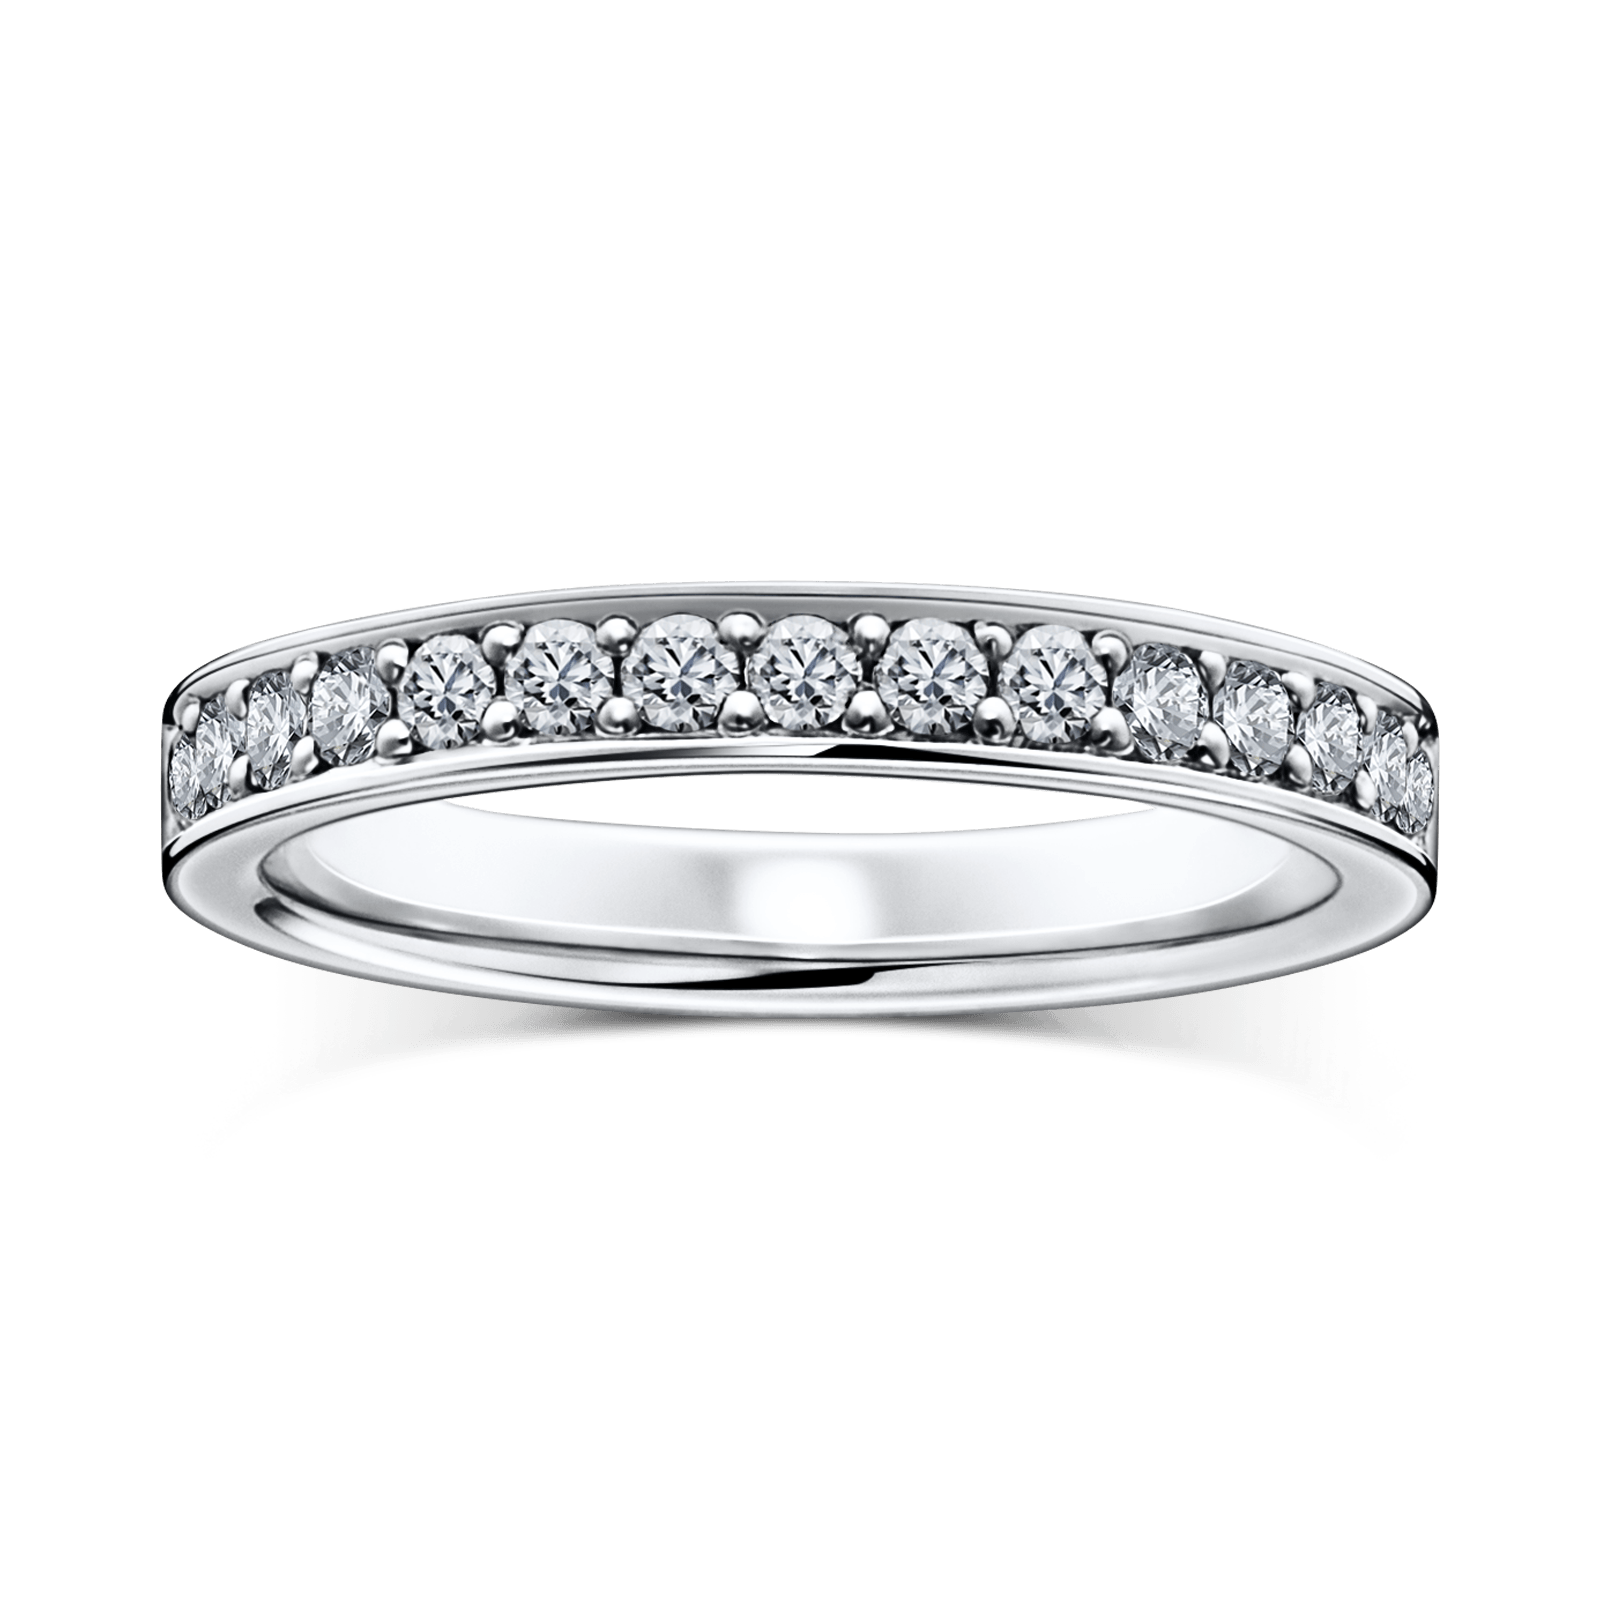 Soiree エタニティリング 婚約指輪 結婚指輪ならラザール ダイヤモンド 一生輝き続けるエンゲージリングやマリッジリングを